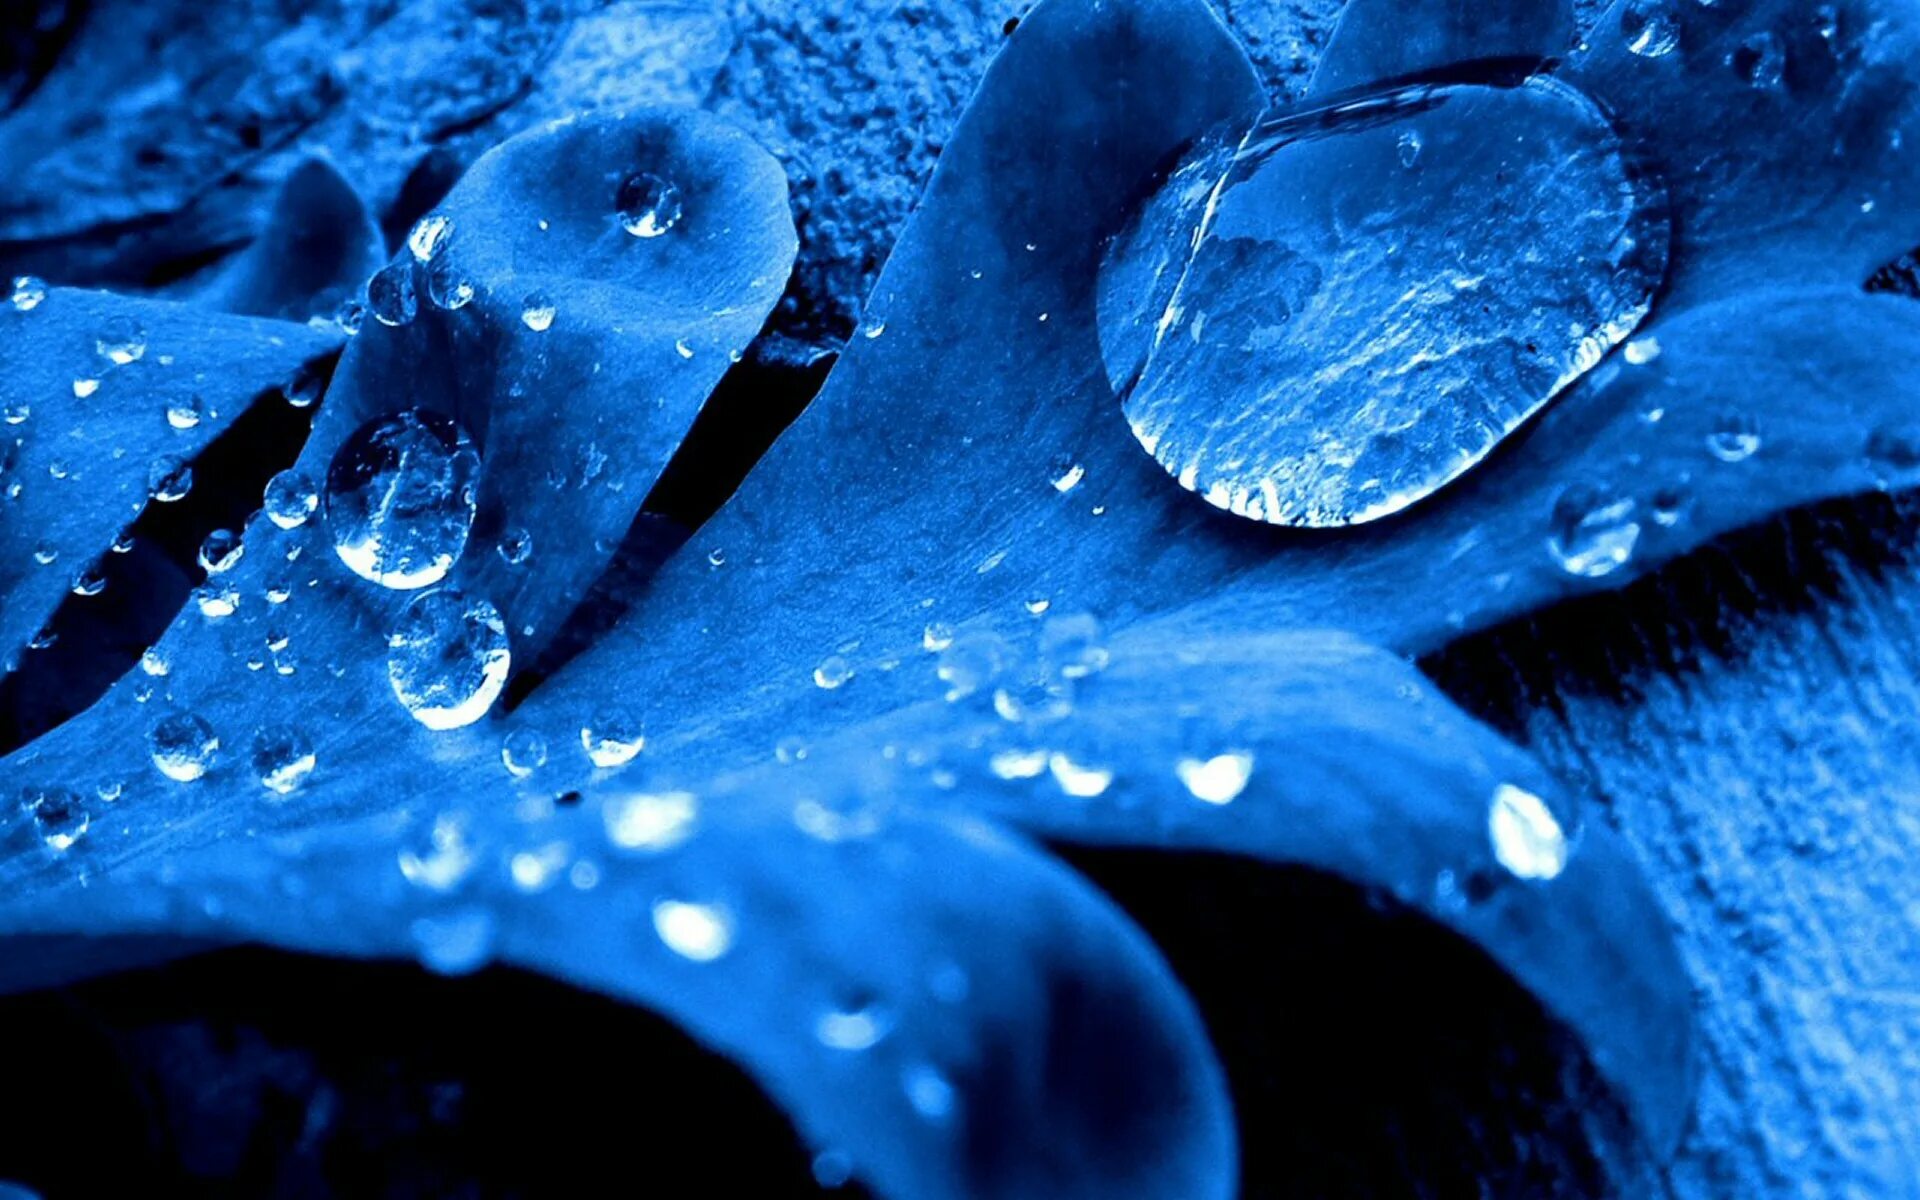 Картинку на экран телефона красивые обои. Макросъемка воды. Красивый синий цвет. Капли воды. Синие обои.